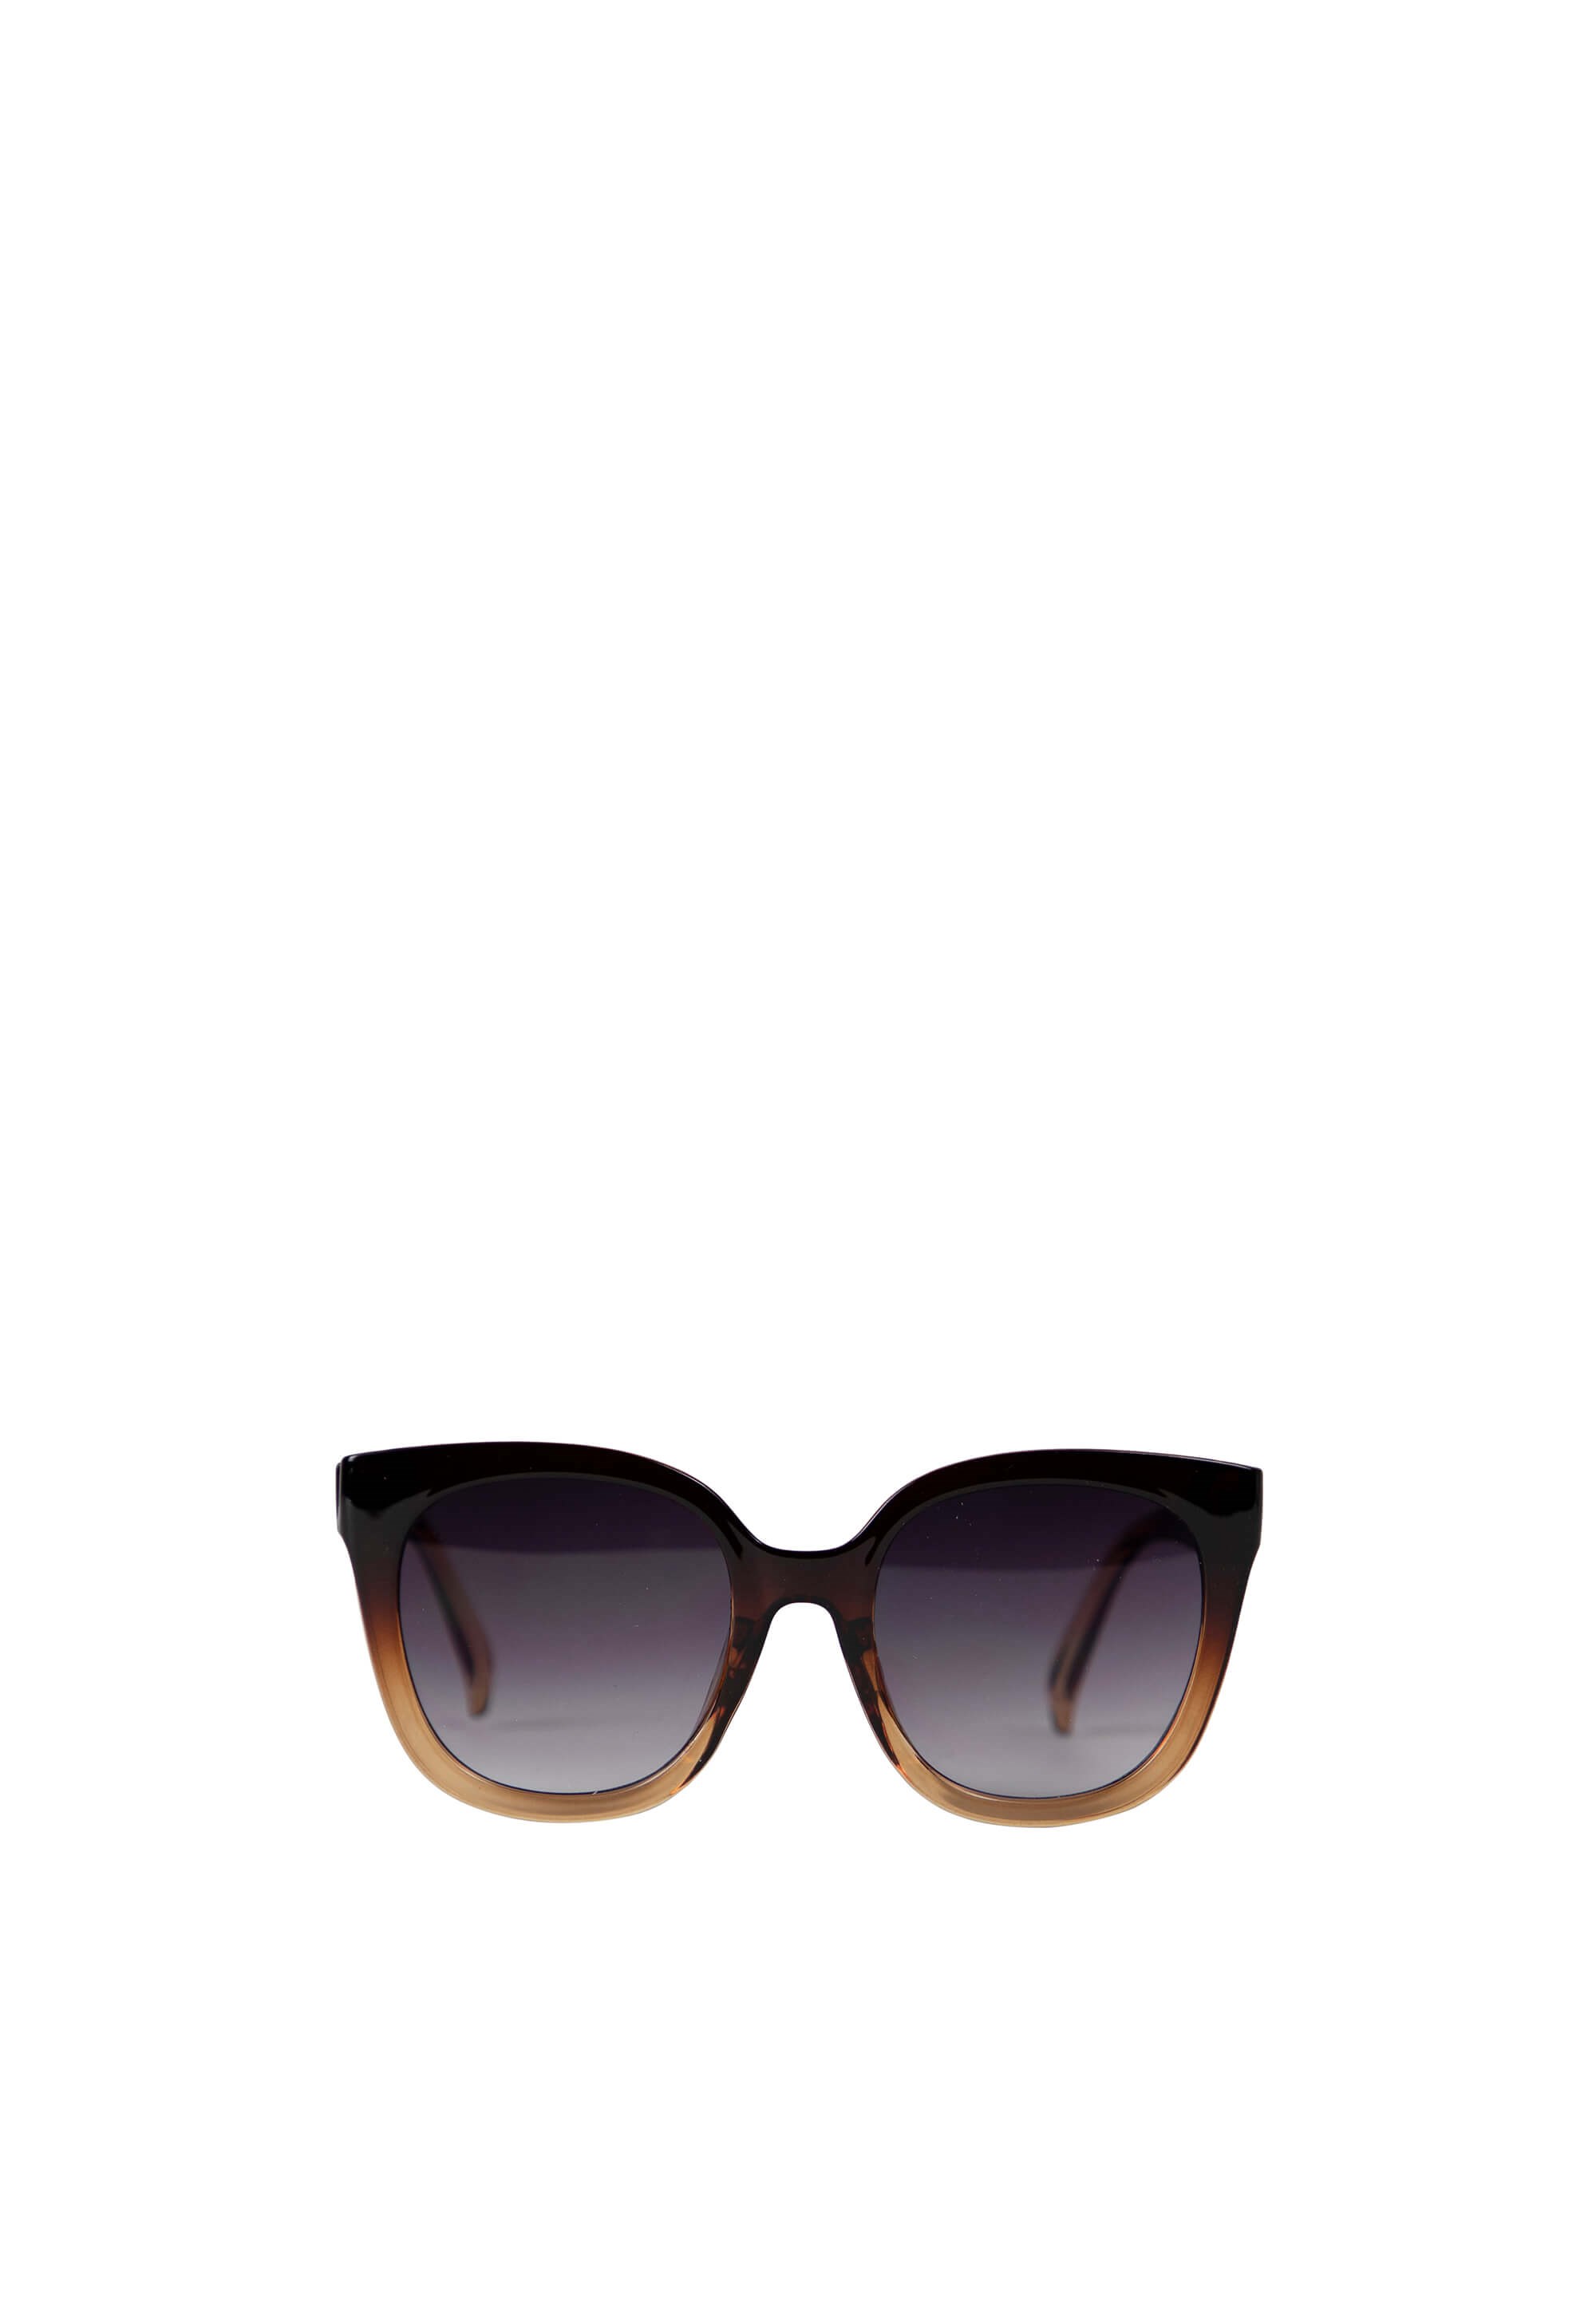 Køb Sylvi Sunglasses, Brown - 5185 her.